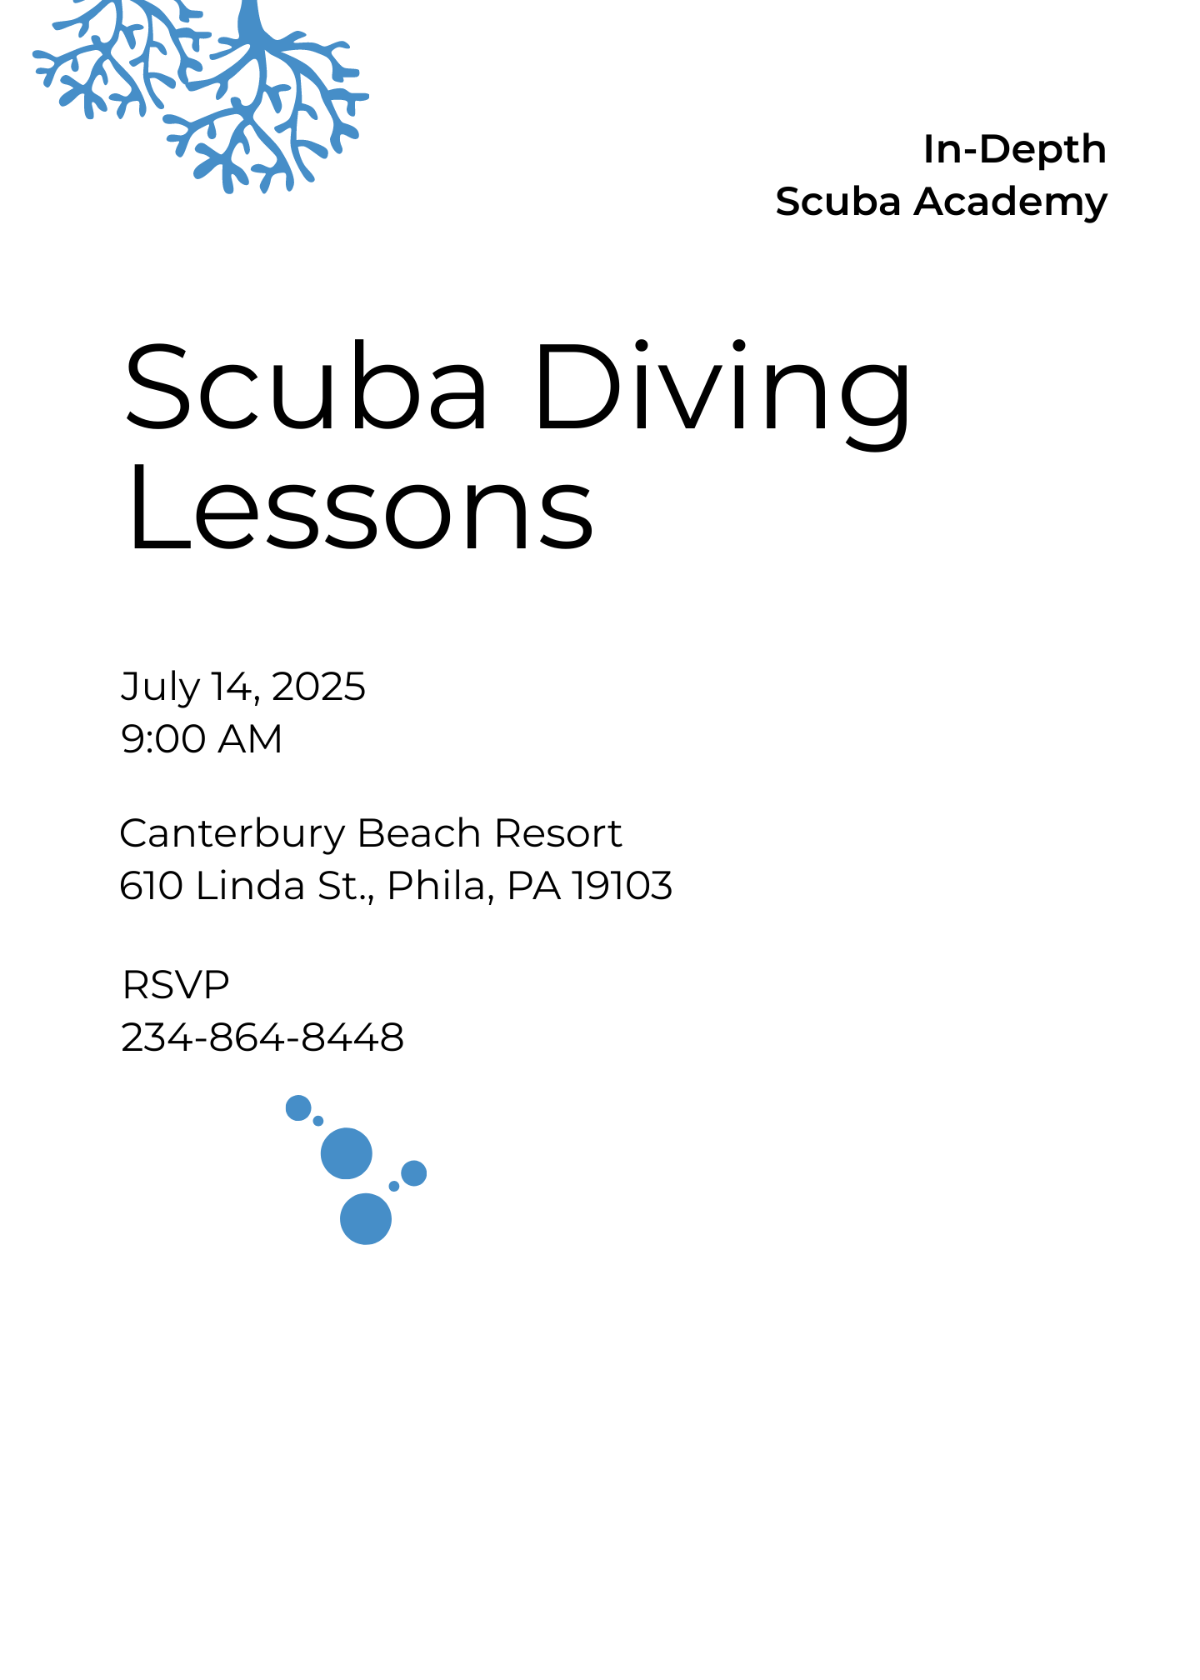 Scuba Diving School Invitation Template